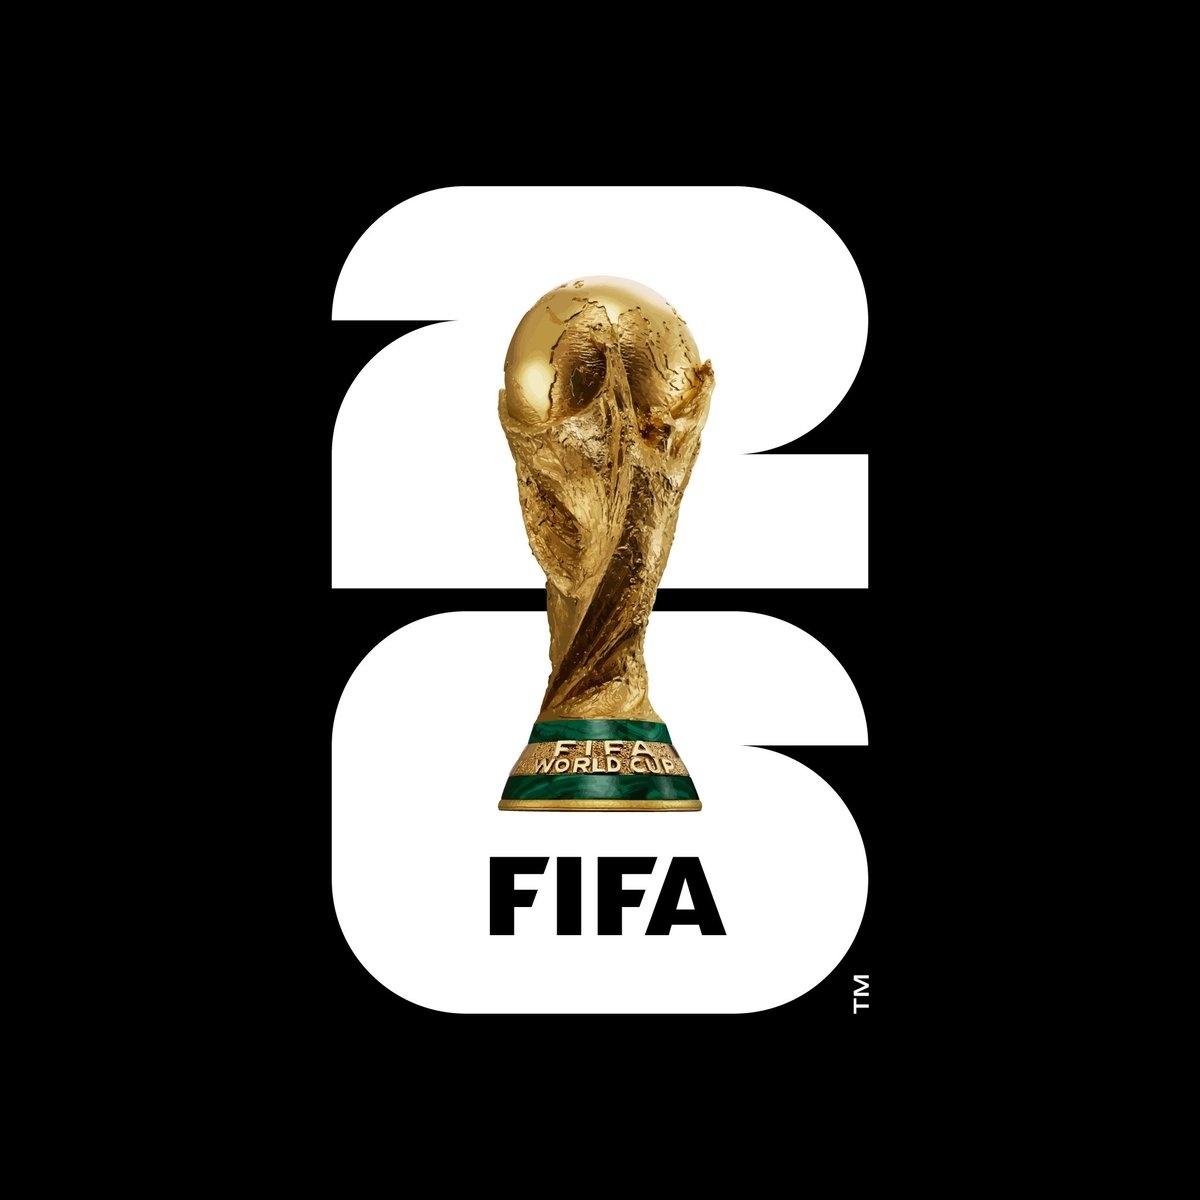 Fifa anuncia oficialmente Brasil como sede da Copa do Mundo de